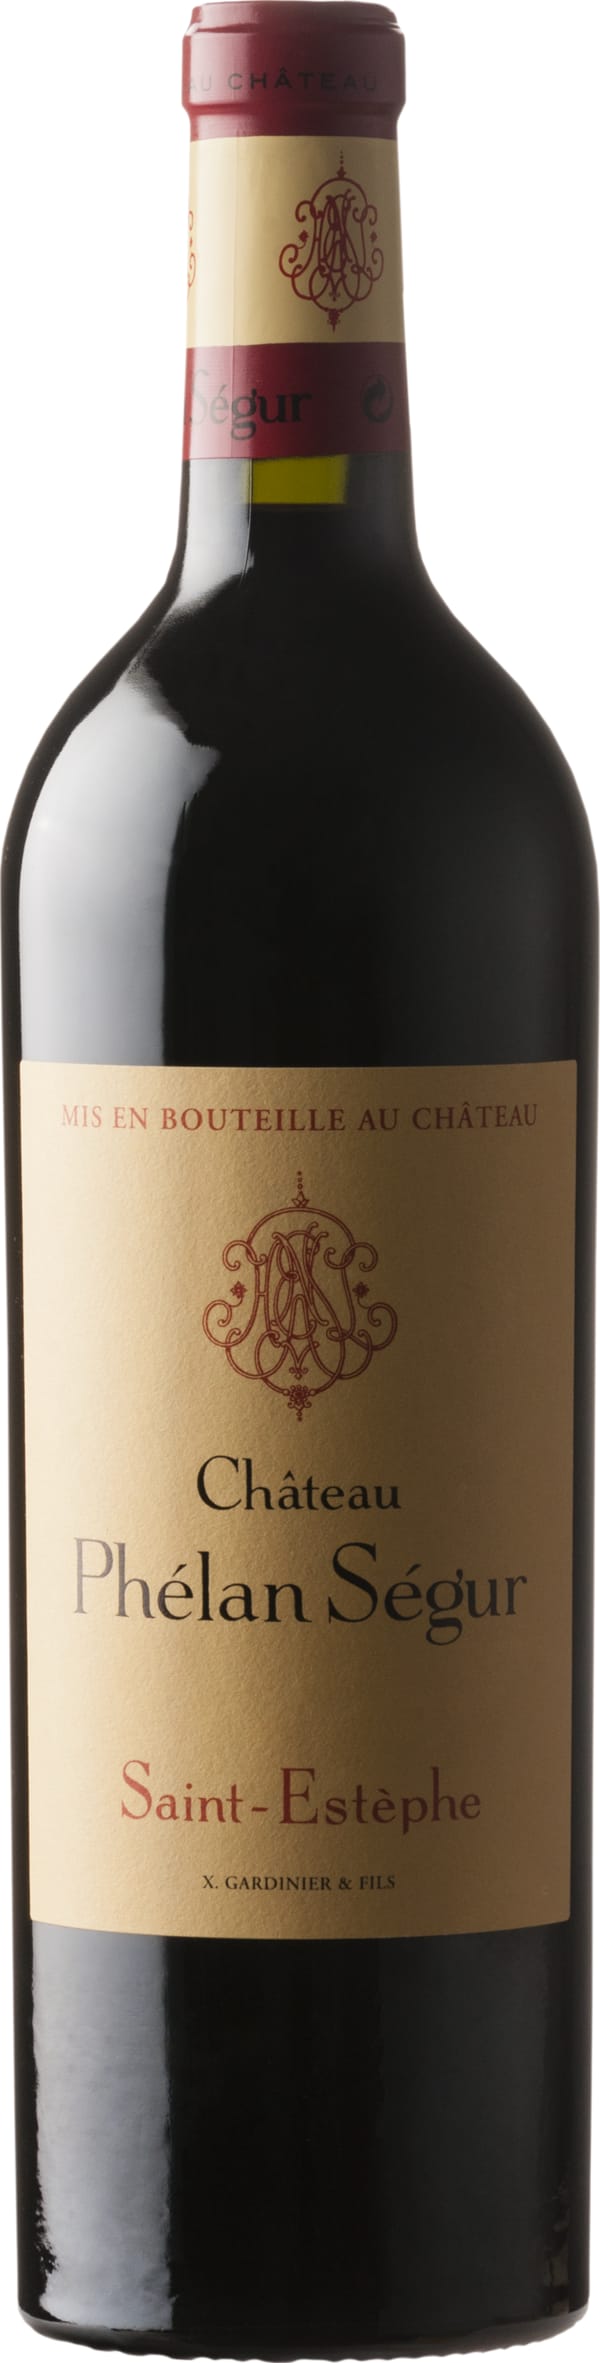 Chateau Phelan Segur Saint-Estephe 2018 75cl - Buy Chateau Phelan Segur Wines from GREAT WINES DIRECT wine shop